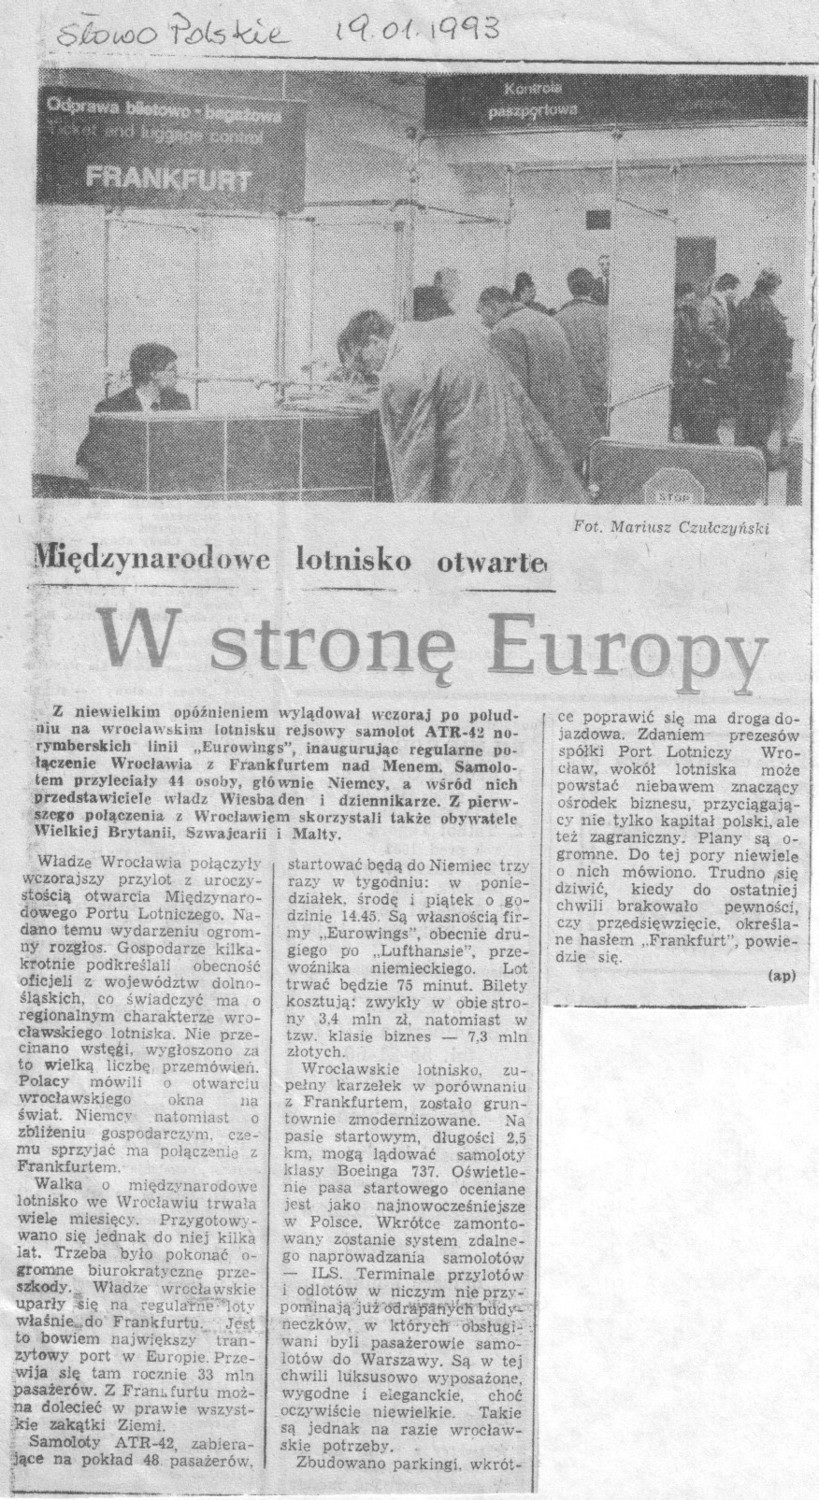 Wrocław: 20 lat temu z lotniska odleciał pierwszy samolot za granicę